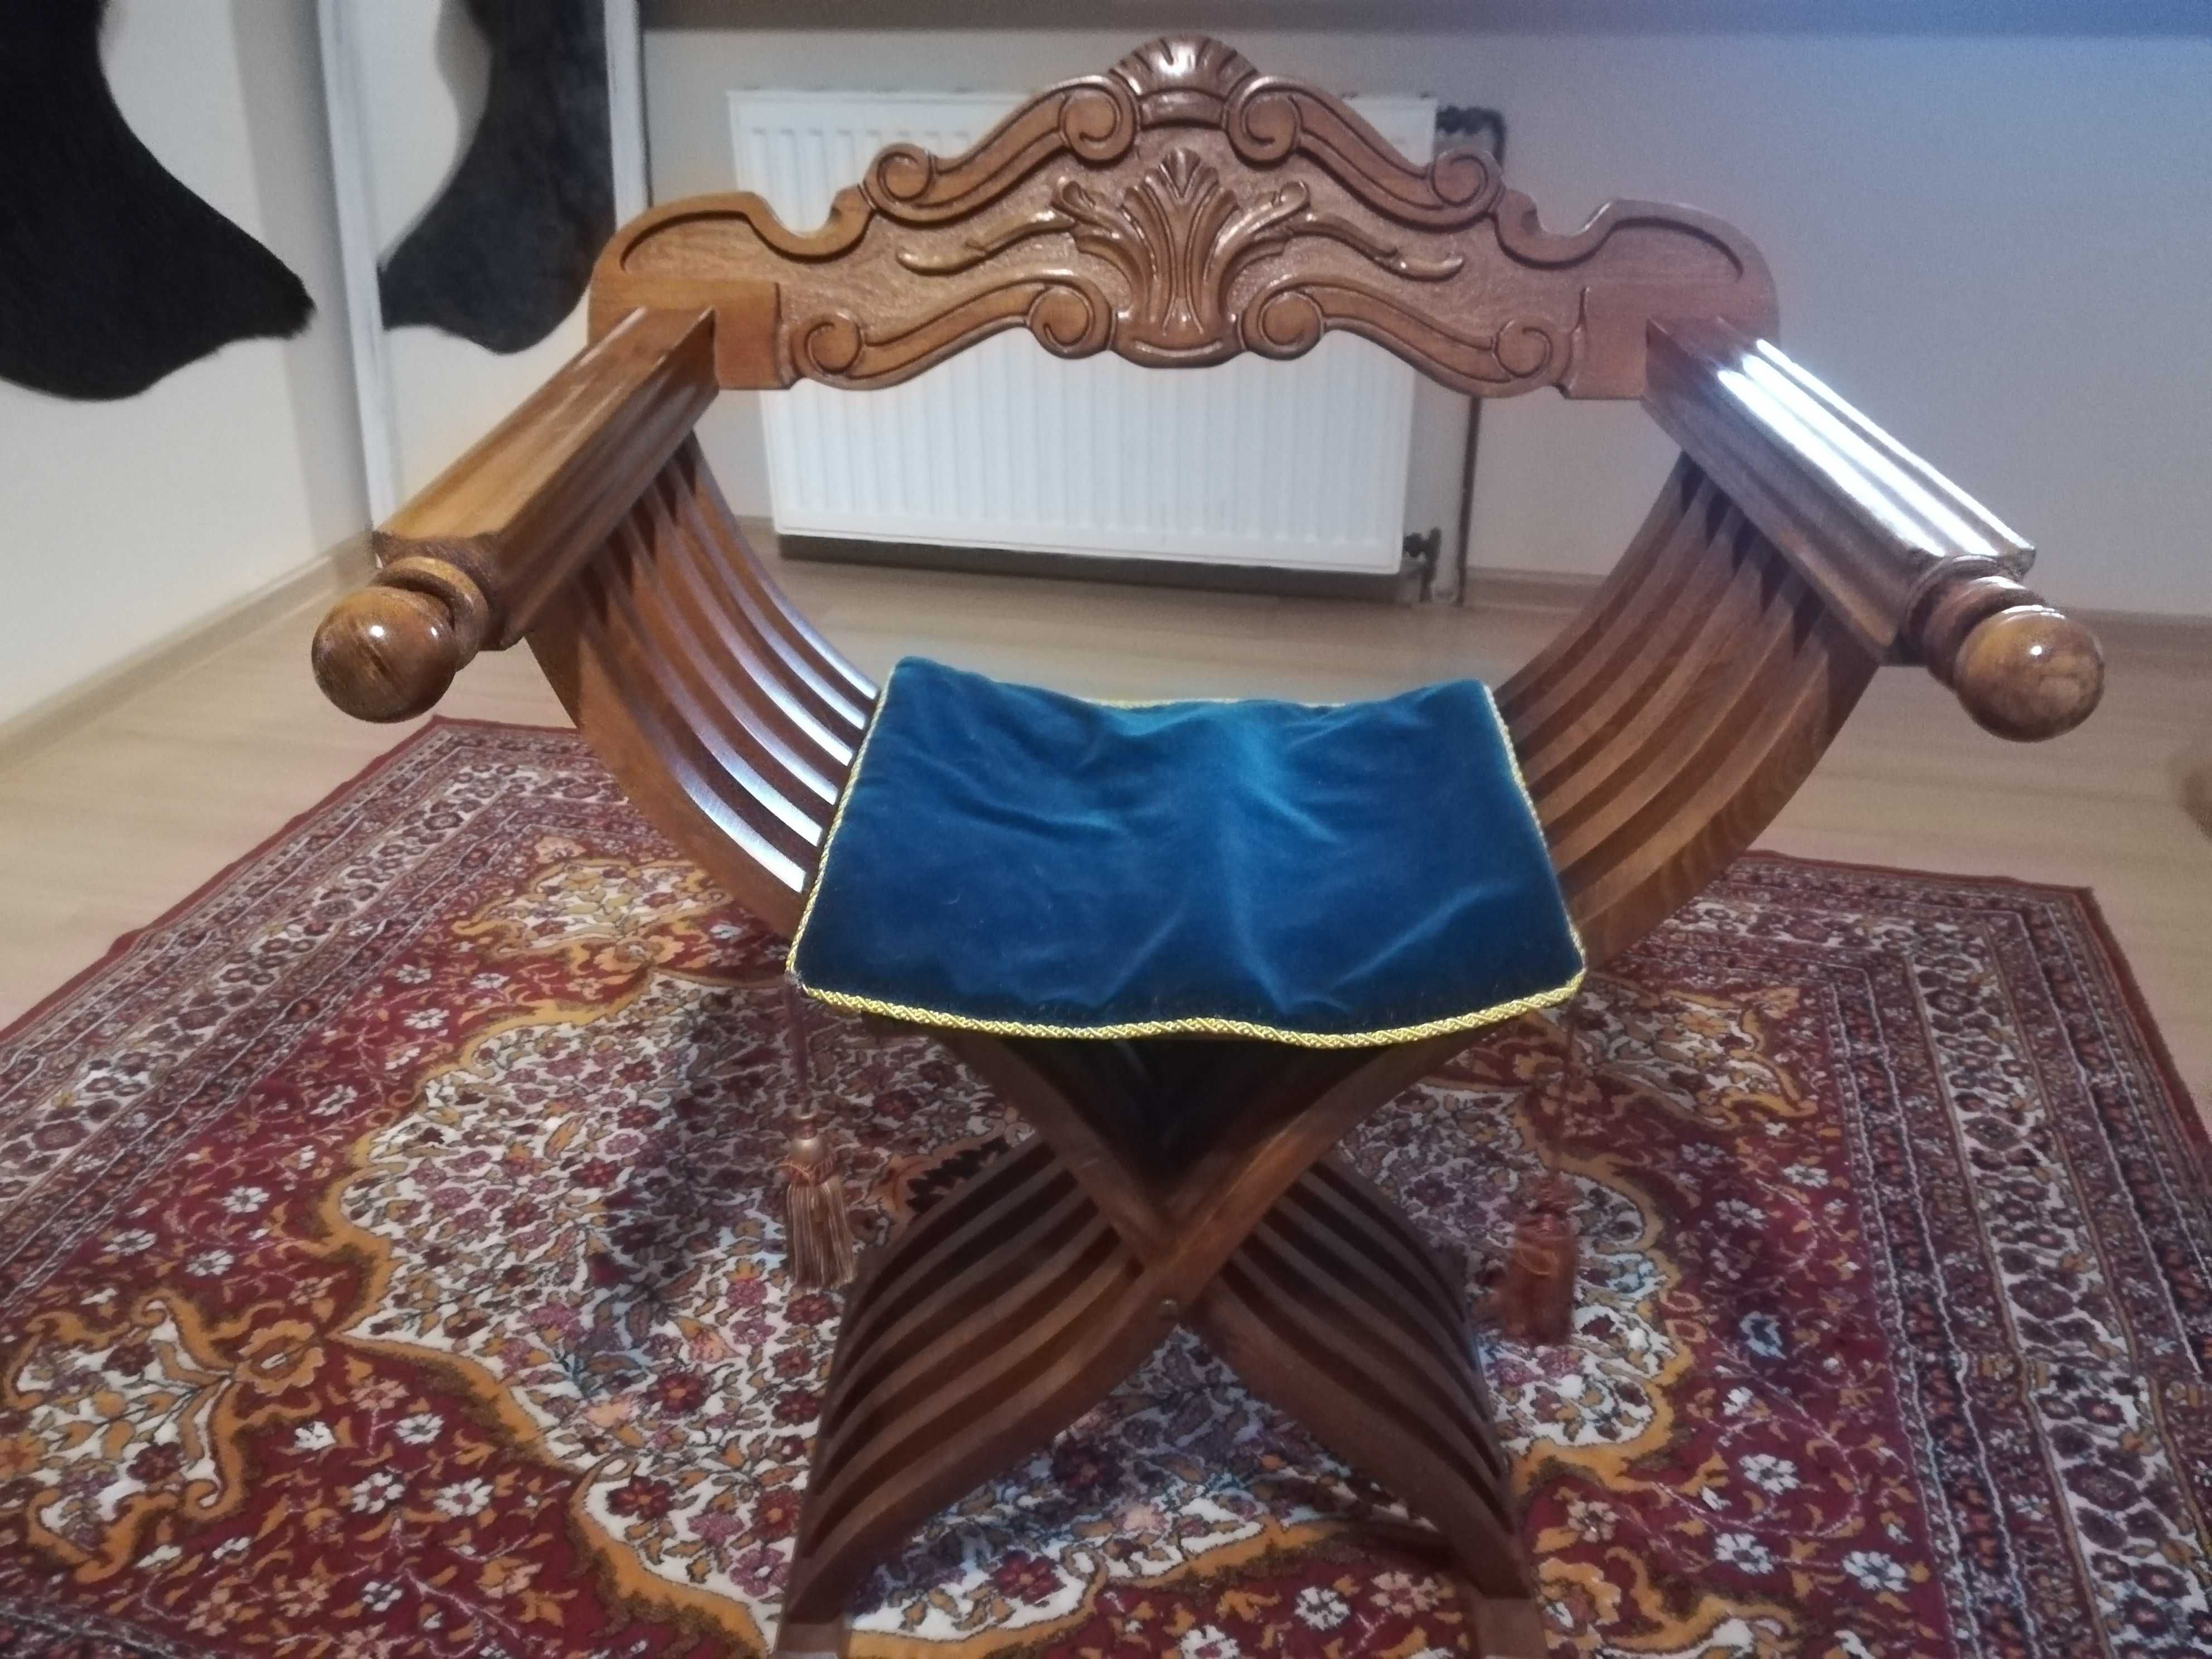 Krzesło składane w typie "rzymskim"